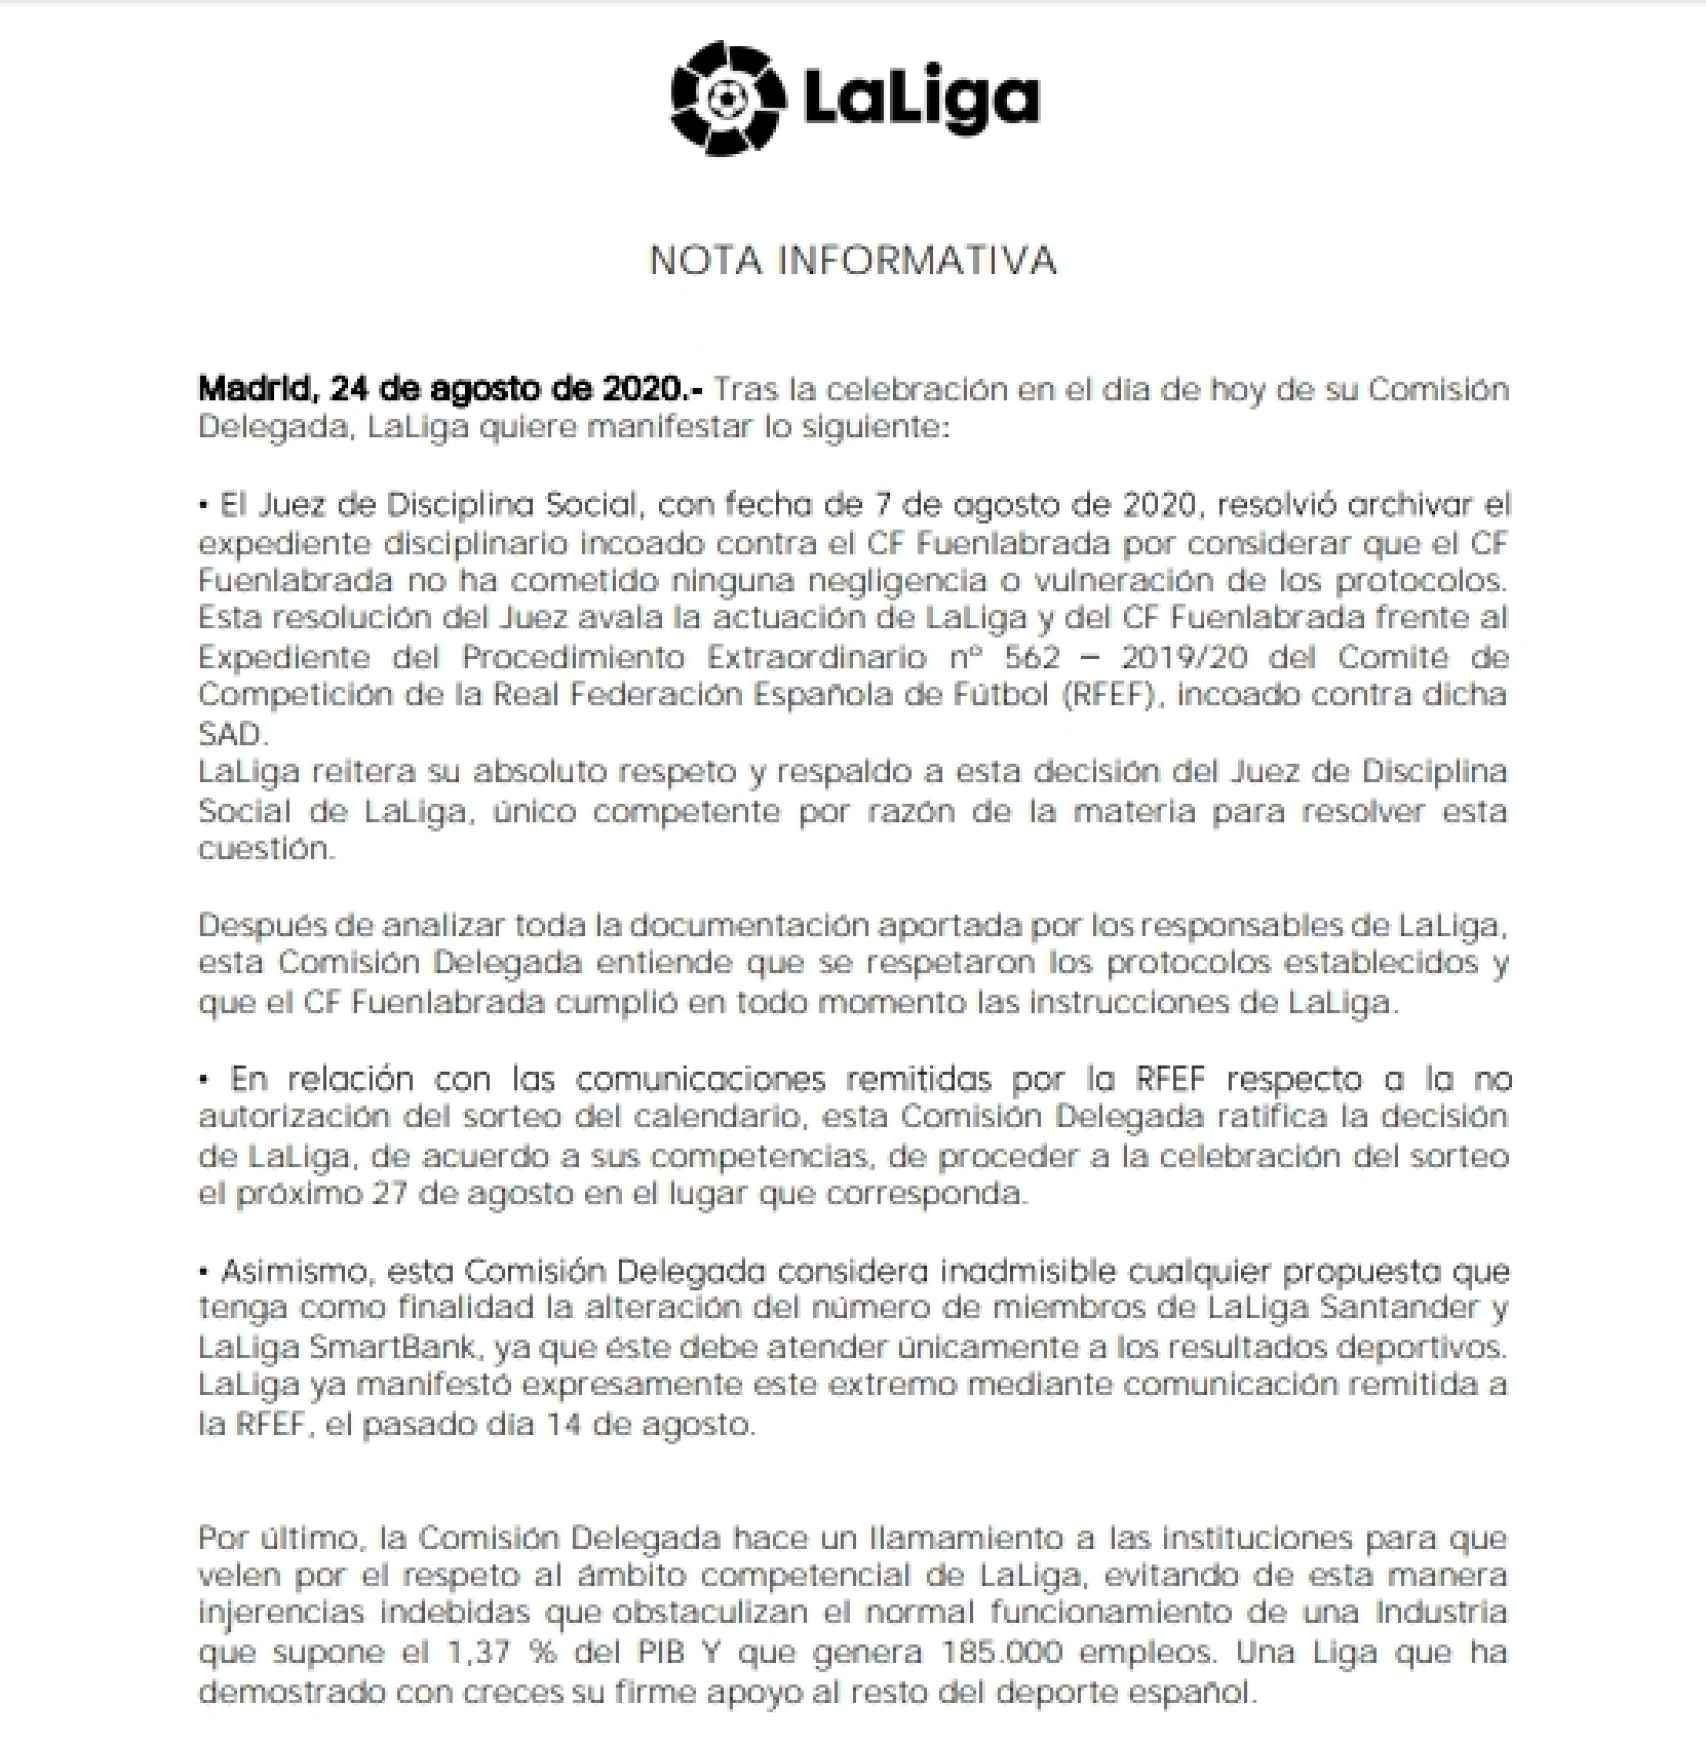 La nota de LaLiga en la que asegura que habrá calendario para la temporada 2020/2021 el 27 de agosto